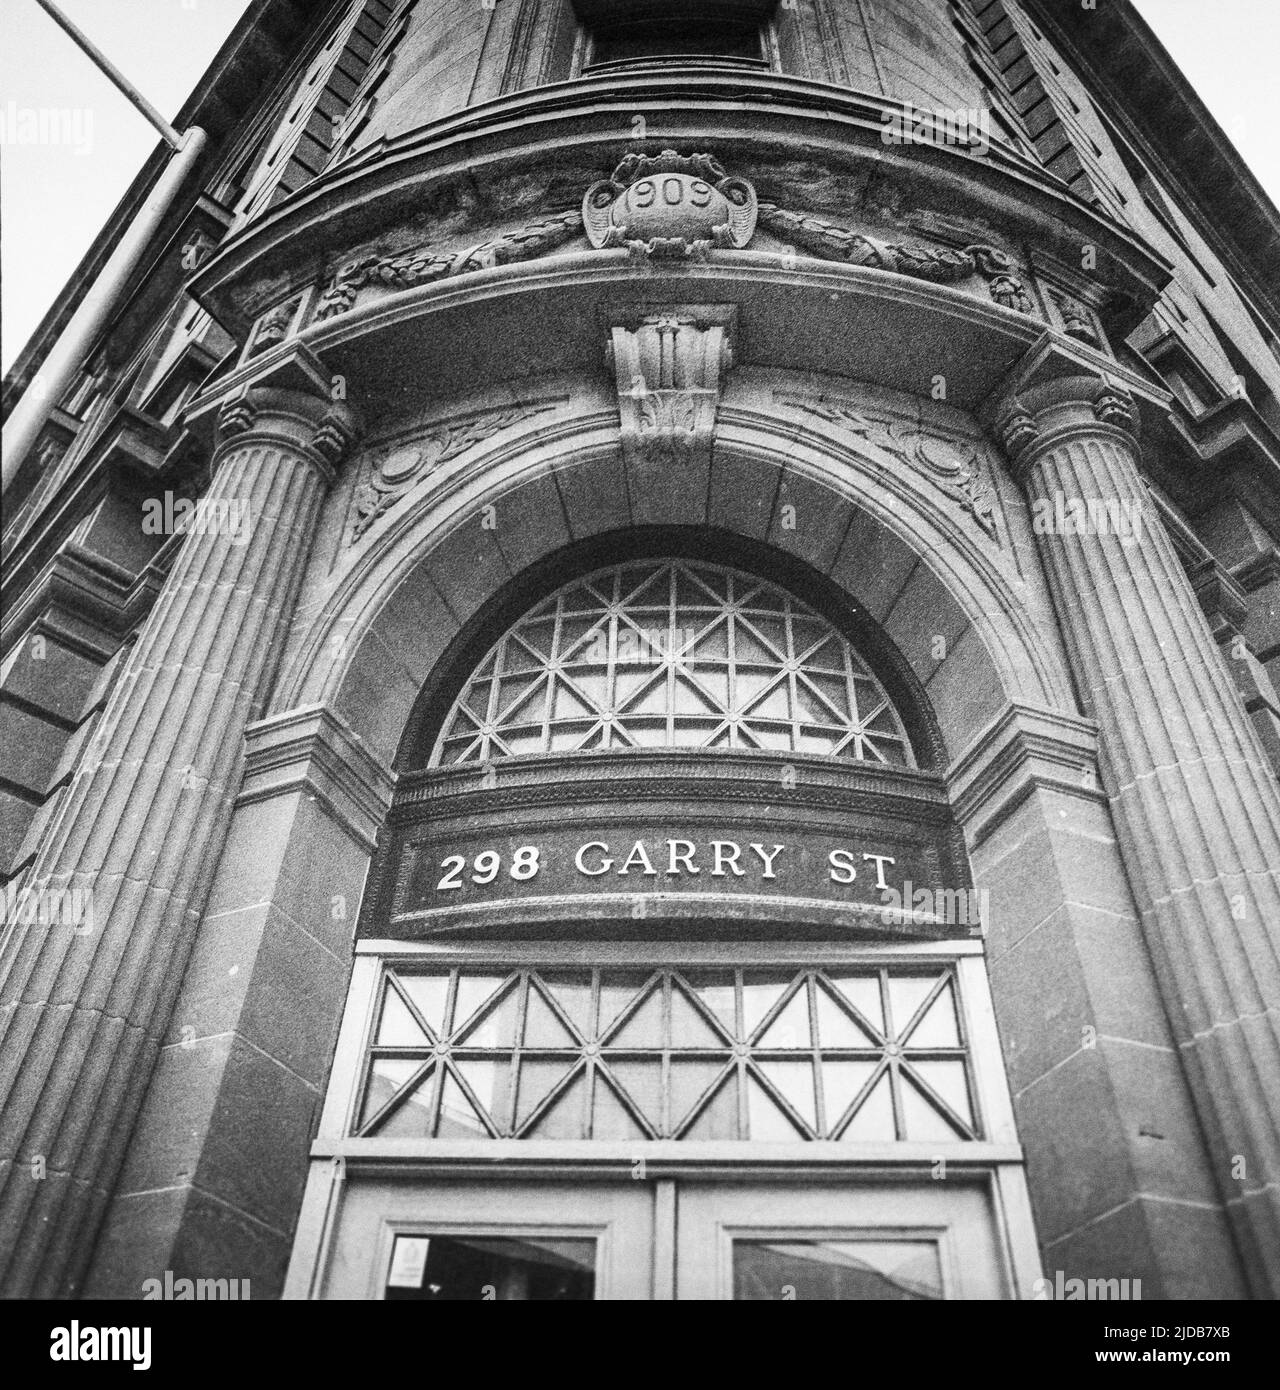 Historische Architektur des permanenten Gebäudes in der Garry Street 298 in Winnipeg; Winnipeg, Manitoba, Kanada Stockfoto